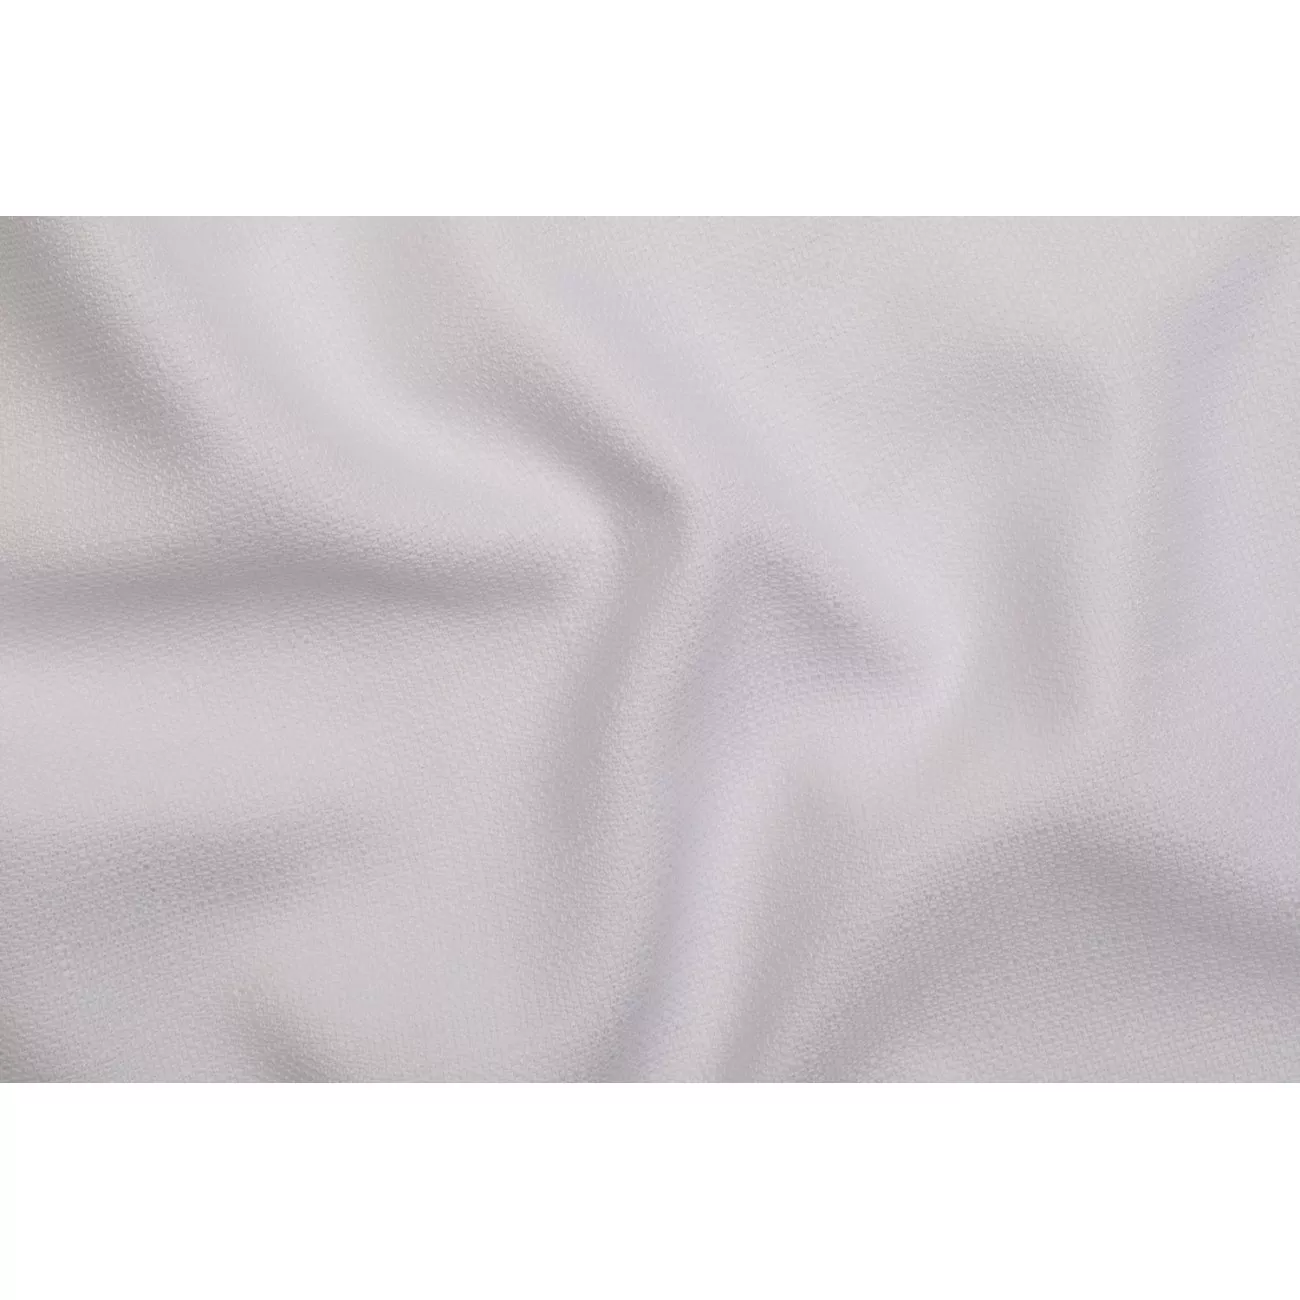 Próbka tkaniny obrusowej Salermo dwustronna biała - 1